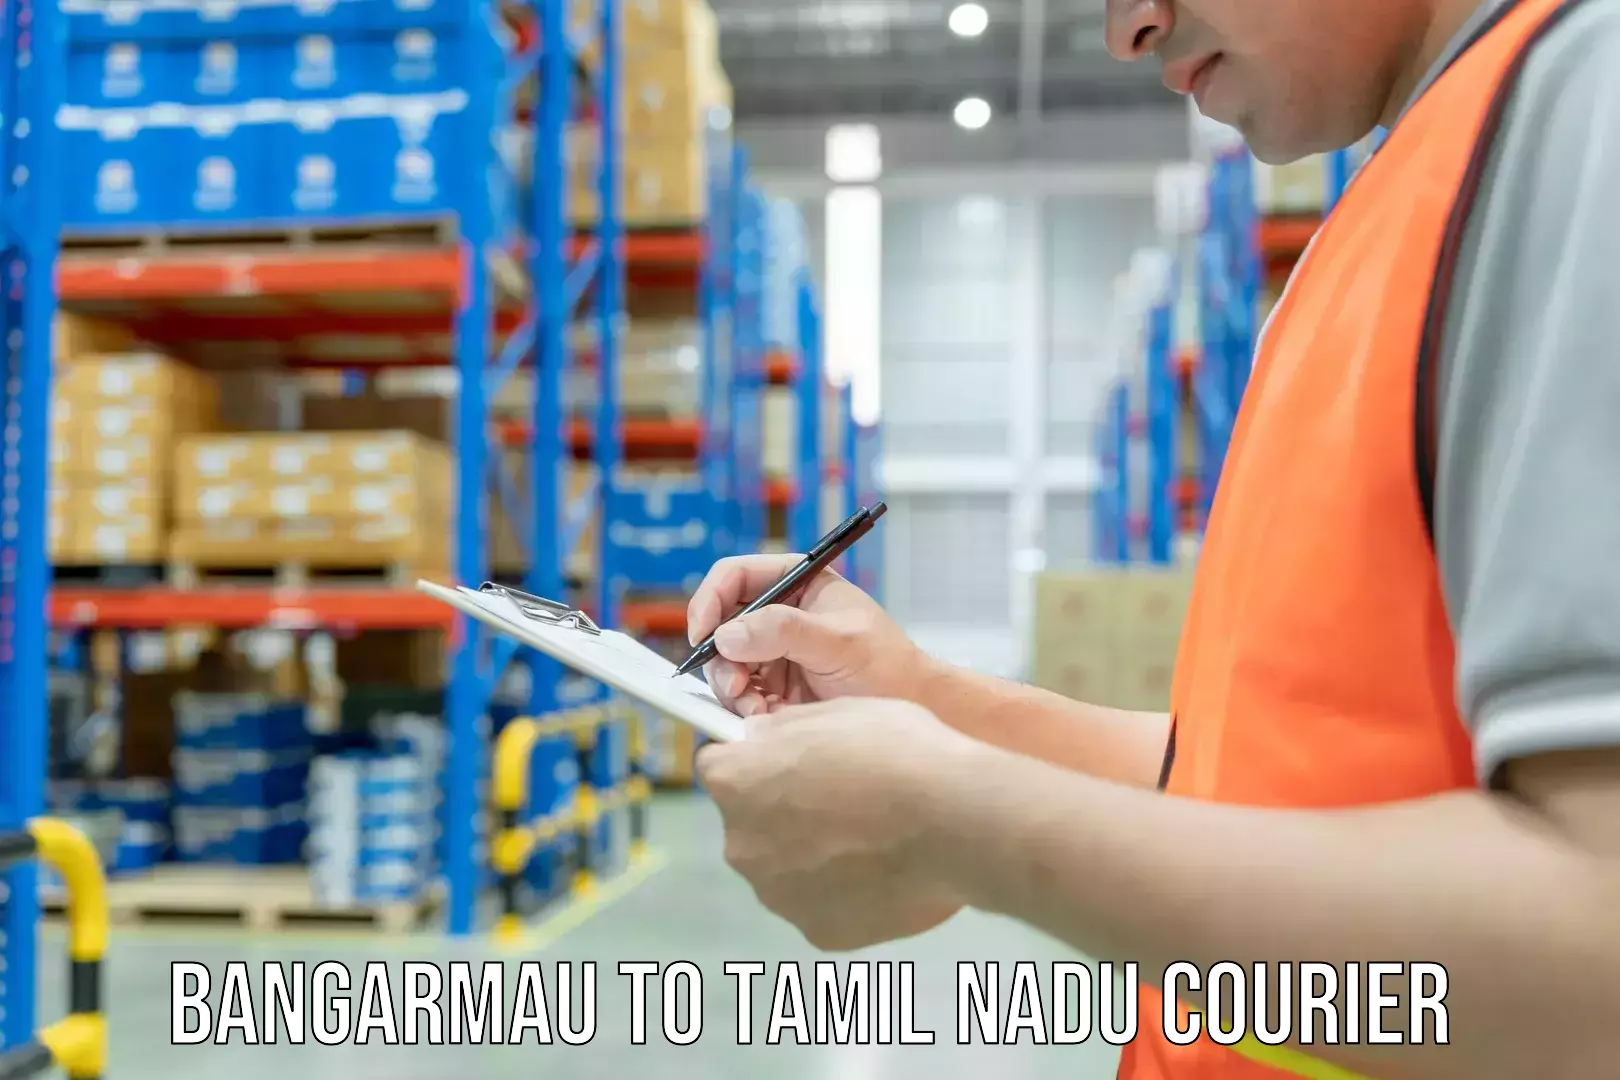 Package delivery network Bangarmau to Tamil Nadu